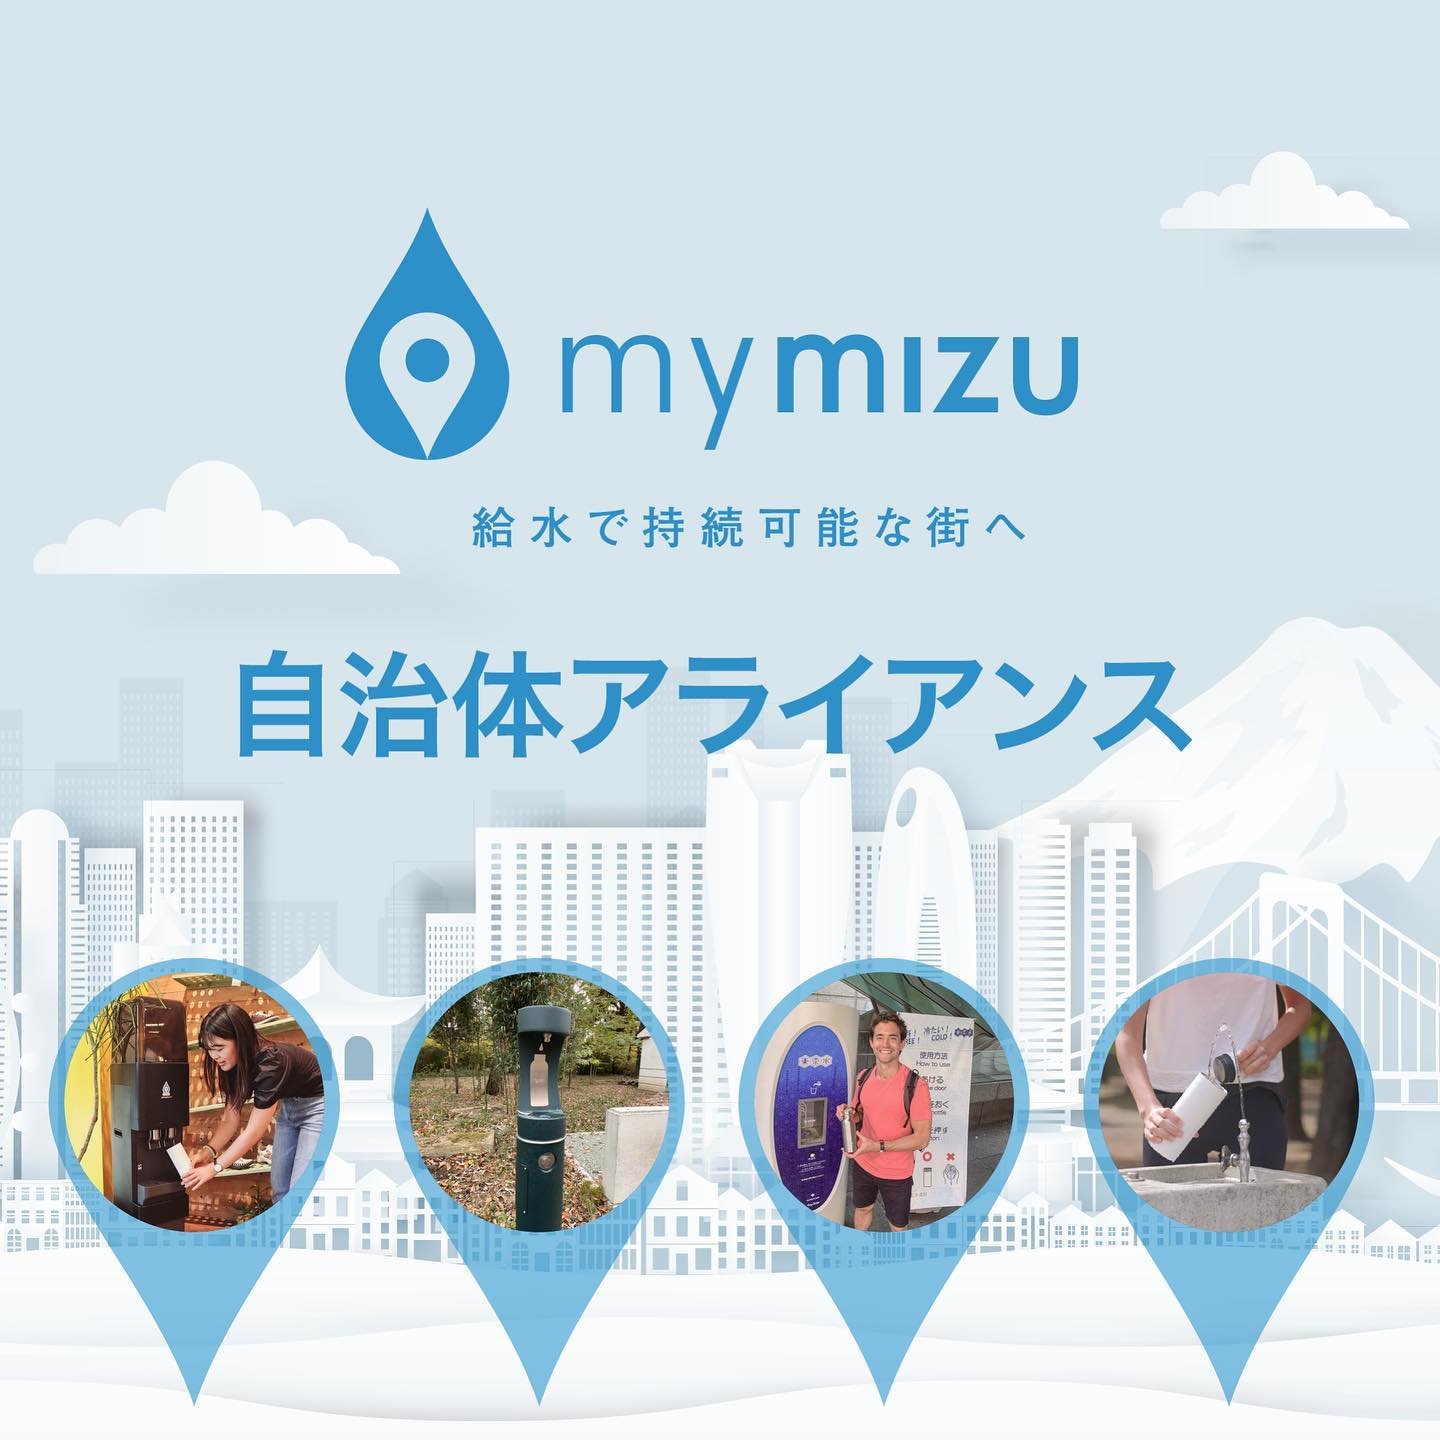 【環境省後援！自治体向けの新イニシアチブを発表】

📣mymizuは、全国の自治体と共に給水をきっかけとしたプラスチックごみ・CO2排出量削減を目指す「mymizu自治体アライアンス」を開始します！
Launching a new initiative for local governments across Japan! 🙌 (English below) 

各自治体でも急務となっている、プラスチックごみ問題や温室効果ガス排出削減への具体的な取り組みを、mymizuと協働して実現しません